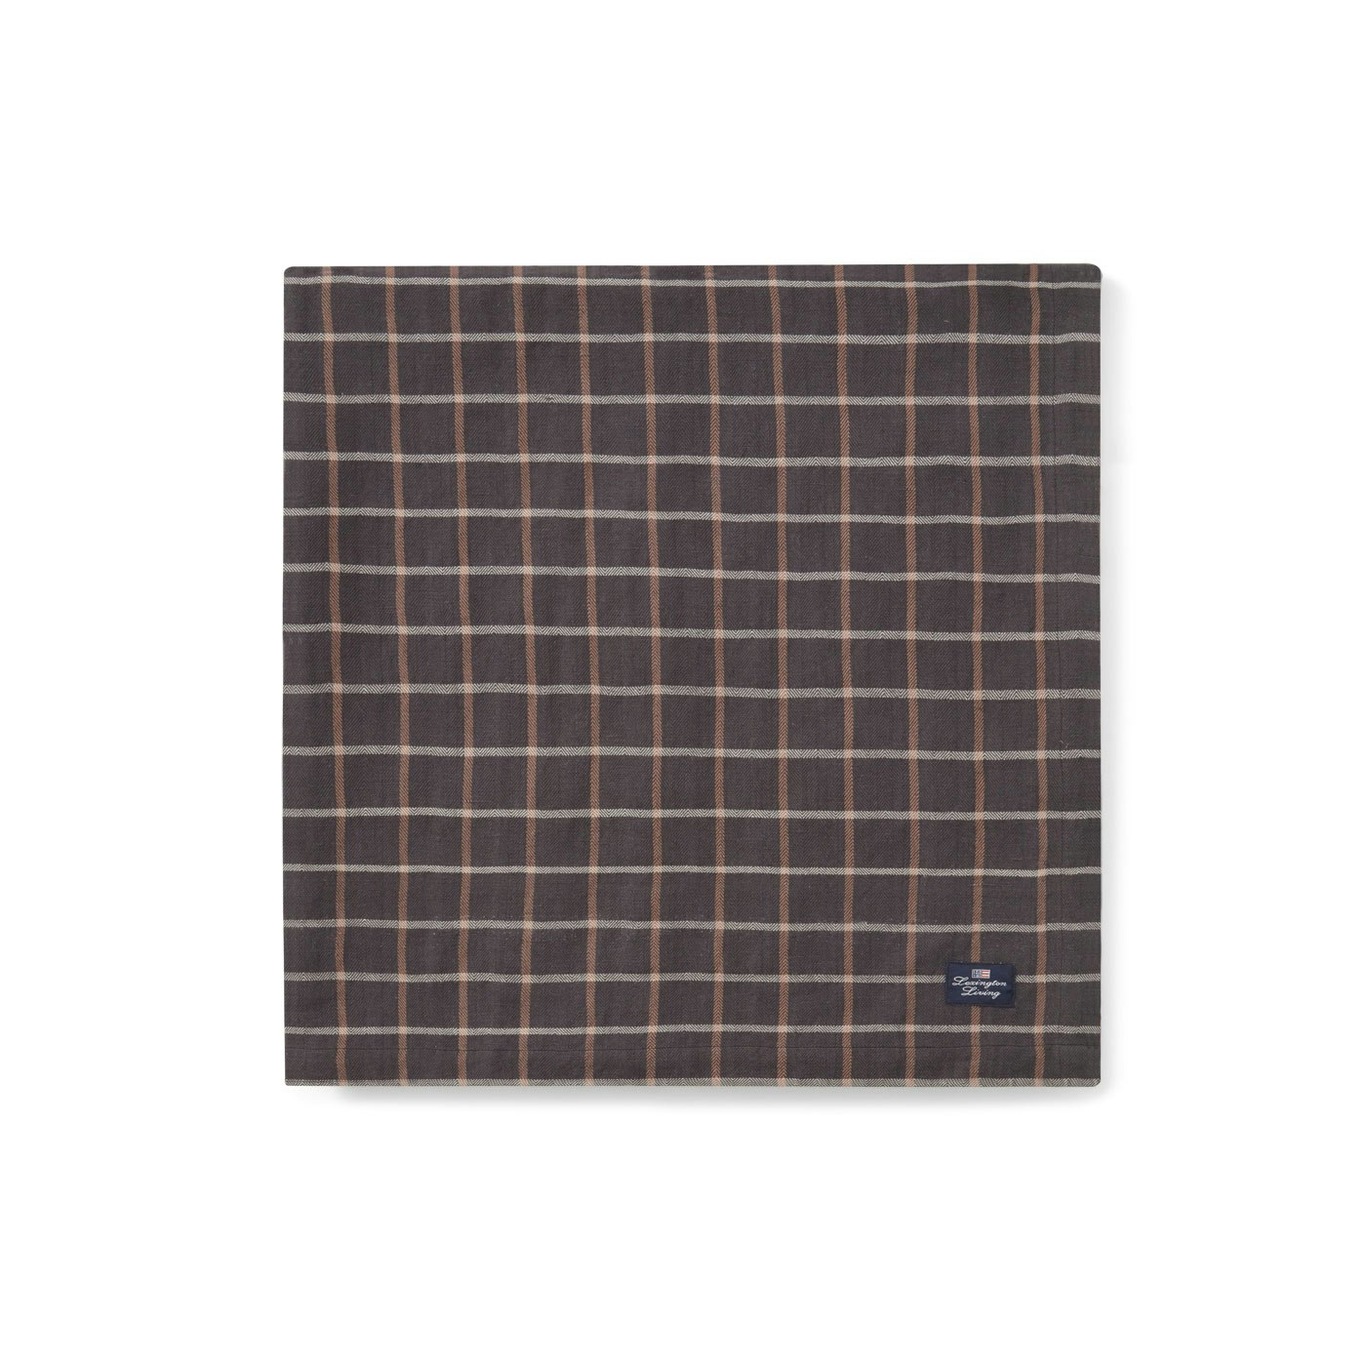 Checked Cotton/Linen Tablecloth, 150x250 cm